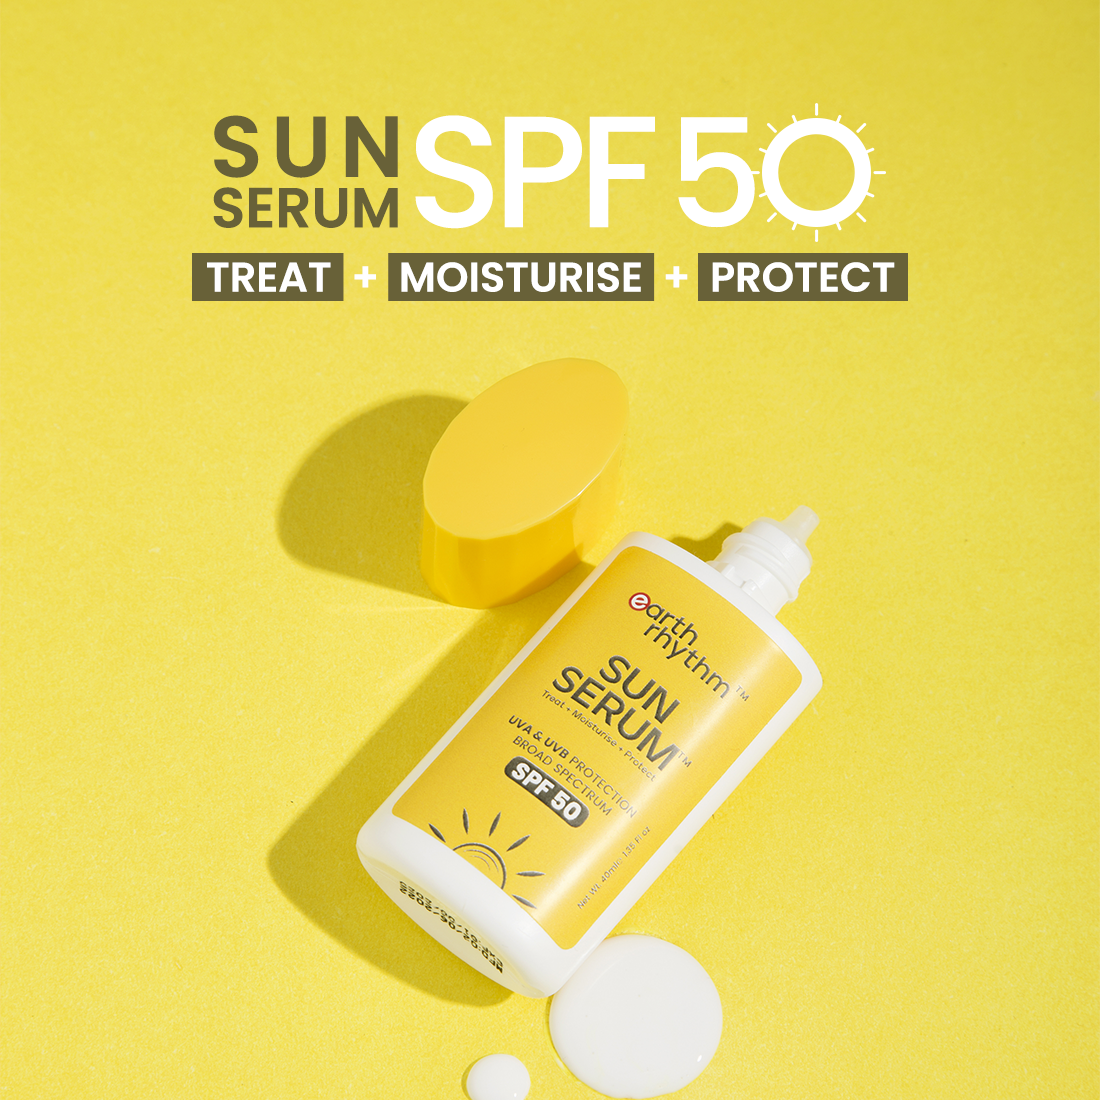 sunserum spf 50 sunscreen